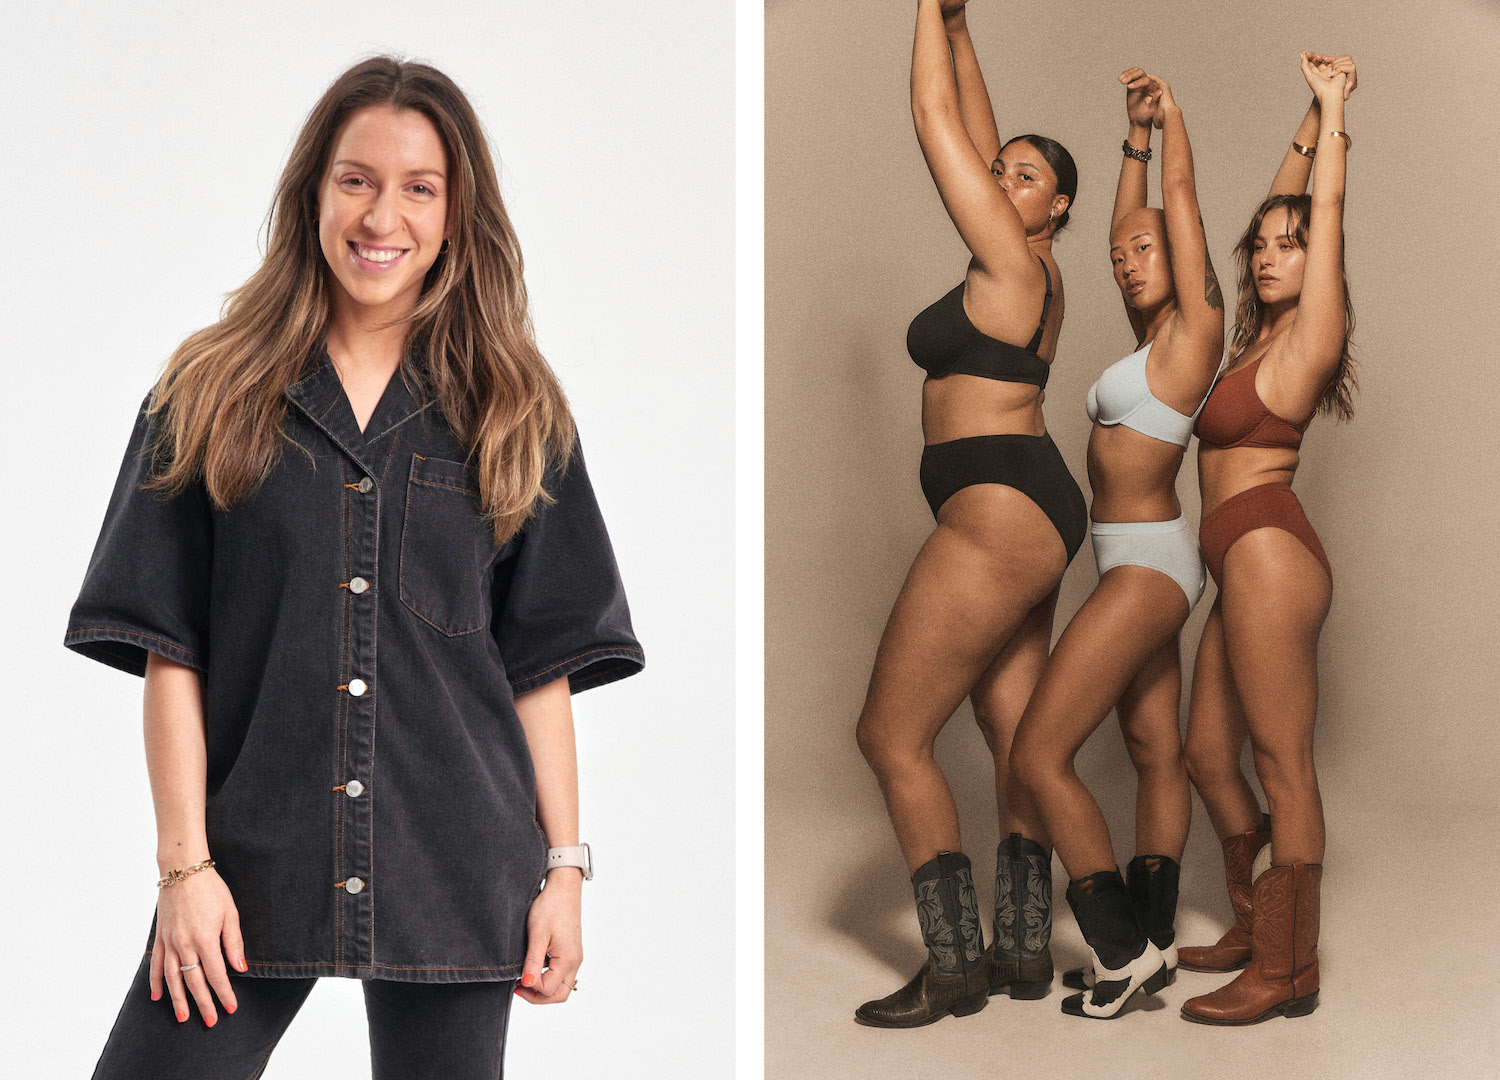 Nice Rack! Meet the Aussie Label Redefining Inclusive Underwear